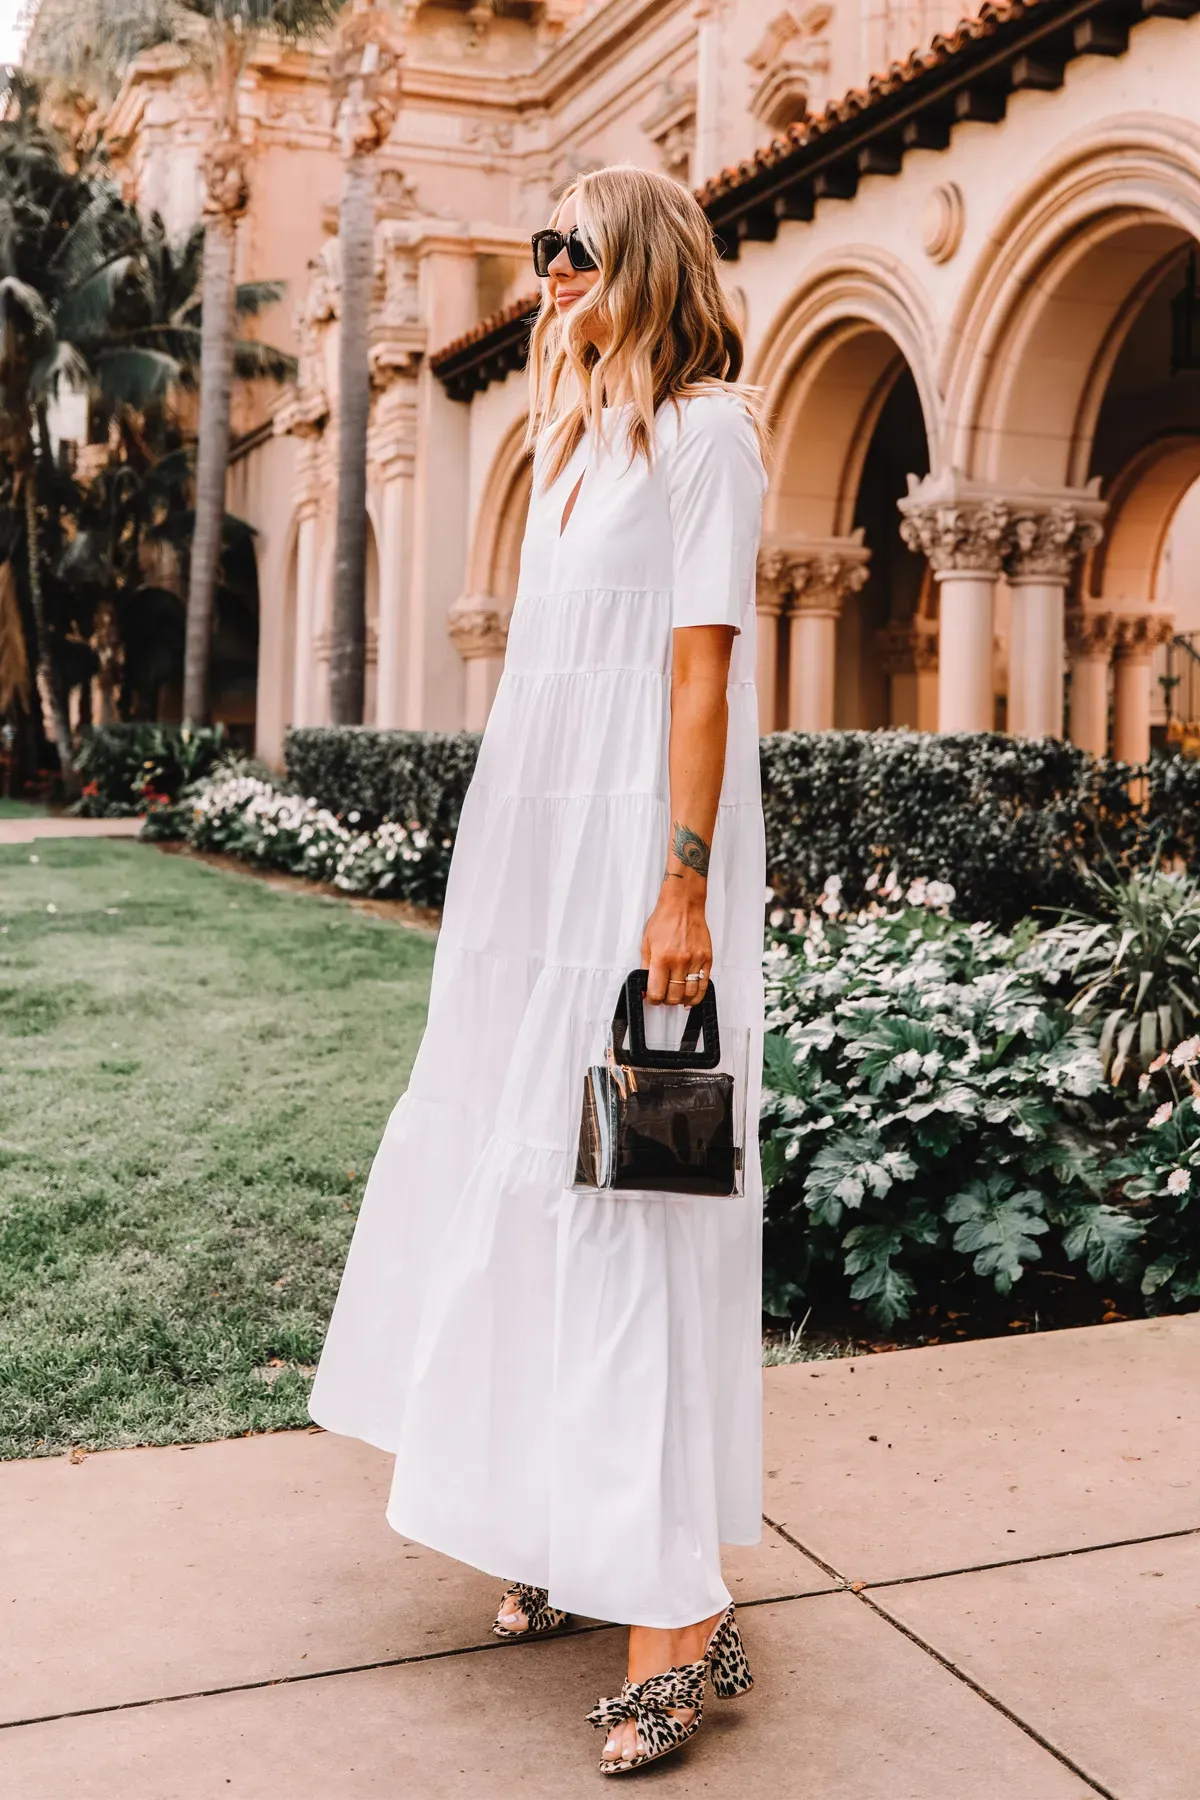 Outfit nữ tính, nhẹ nhàng với váy maxi trắng phối cùng giày cao gót chuẩn Minimalism style thích hợp đi biển hoặc dạo phố